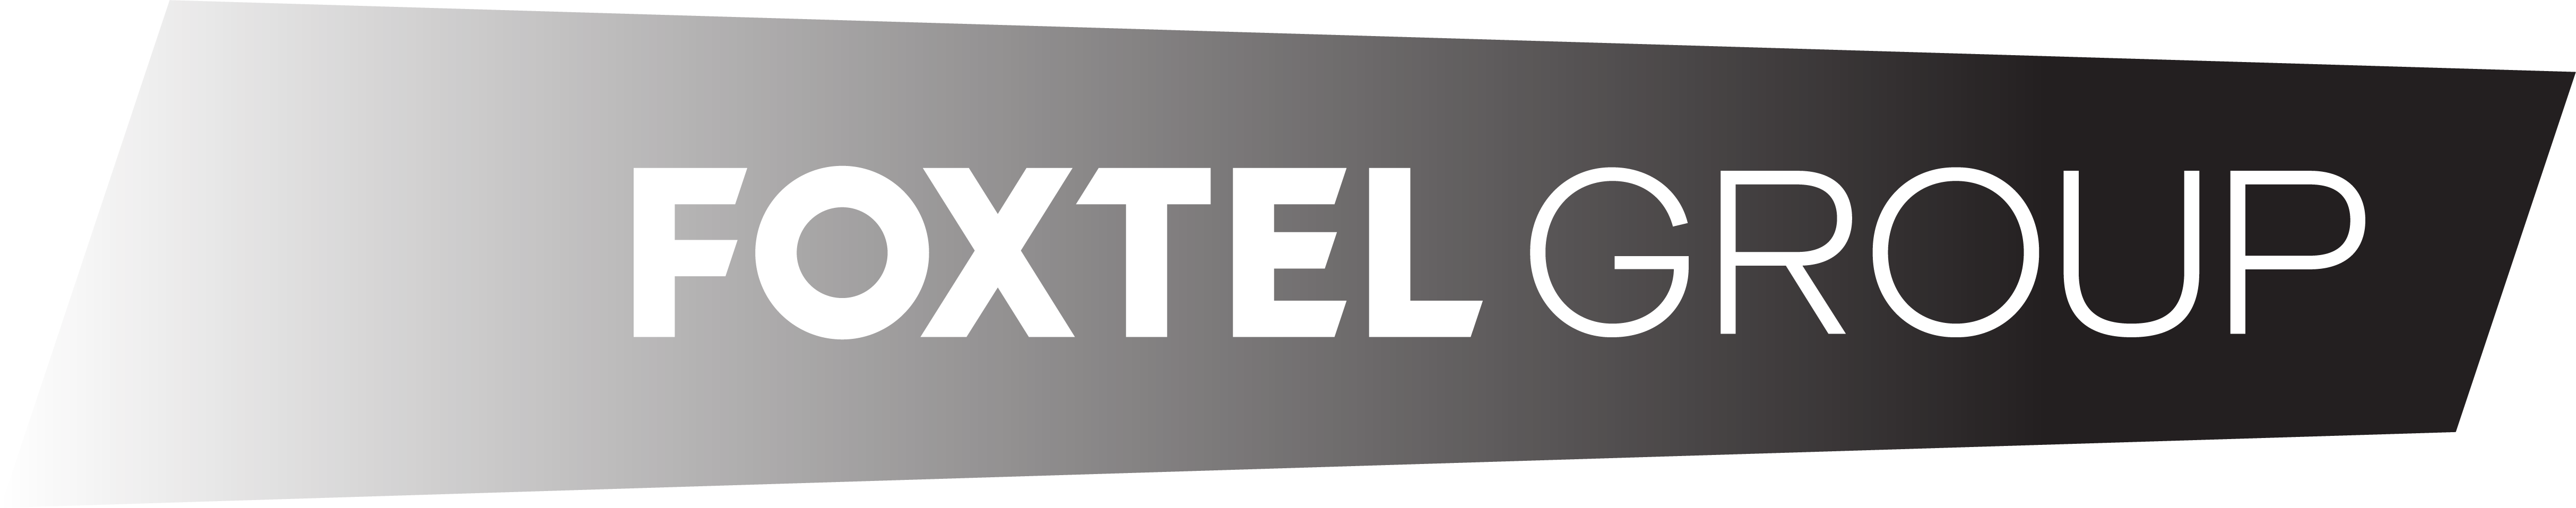 Foxtel Channels Group